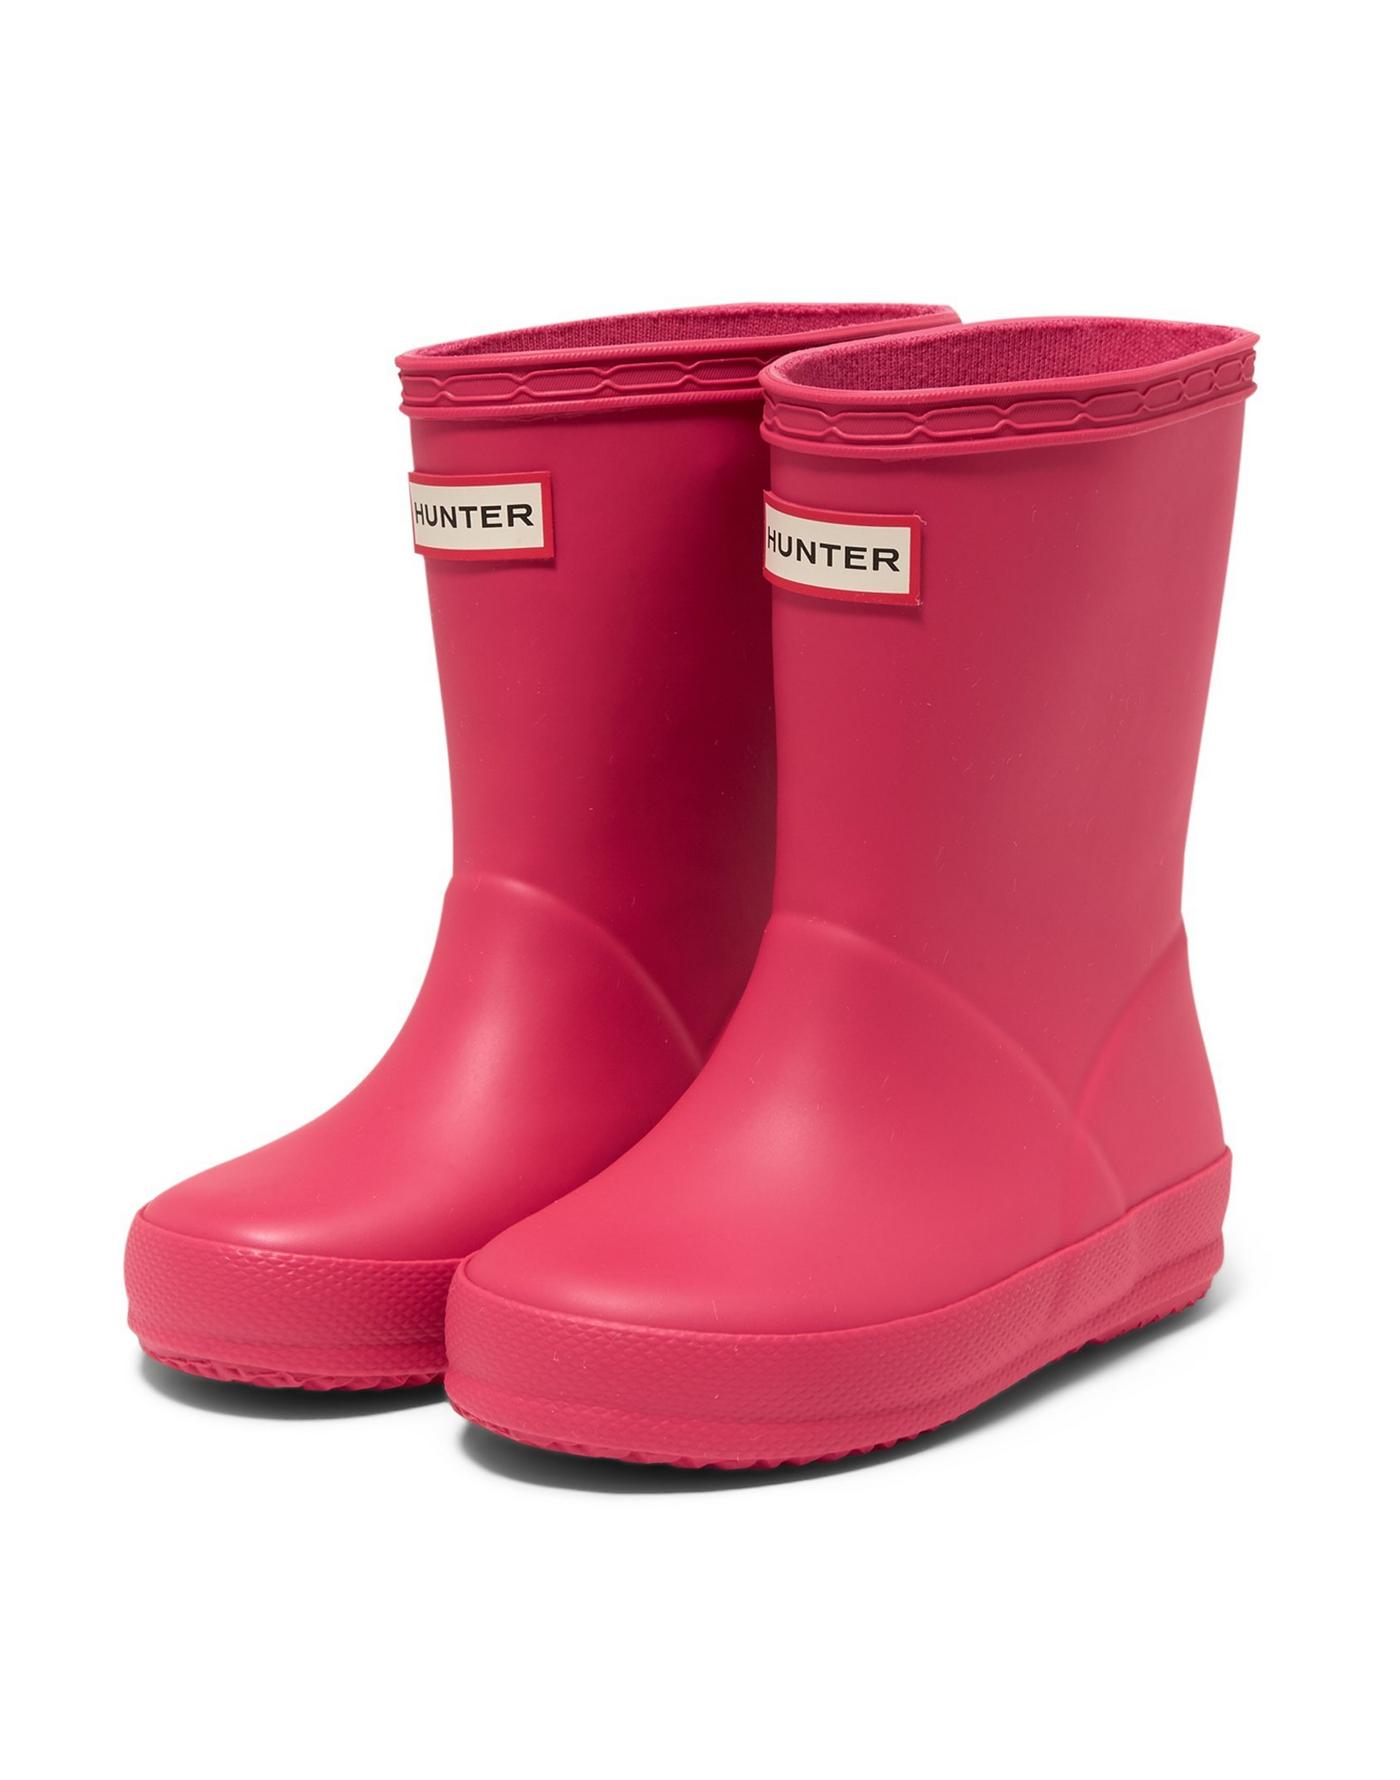 rain boots for kids, kids Hunter rain boots